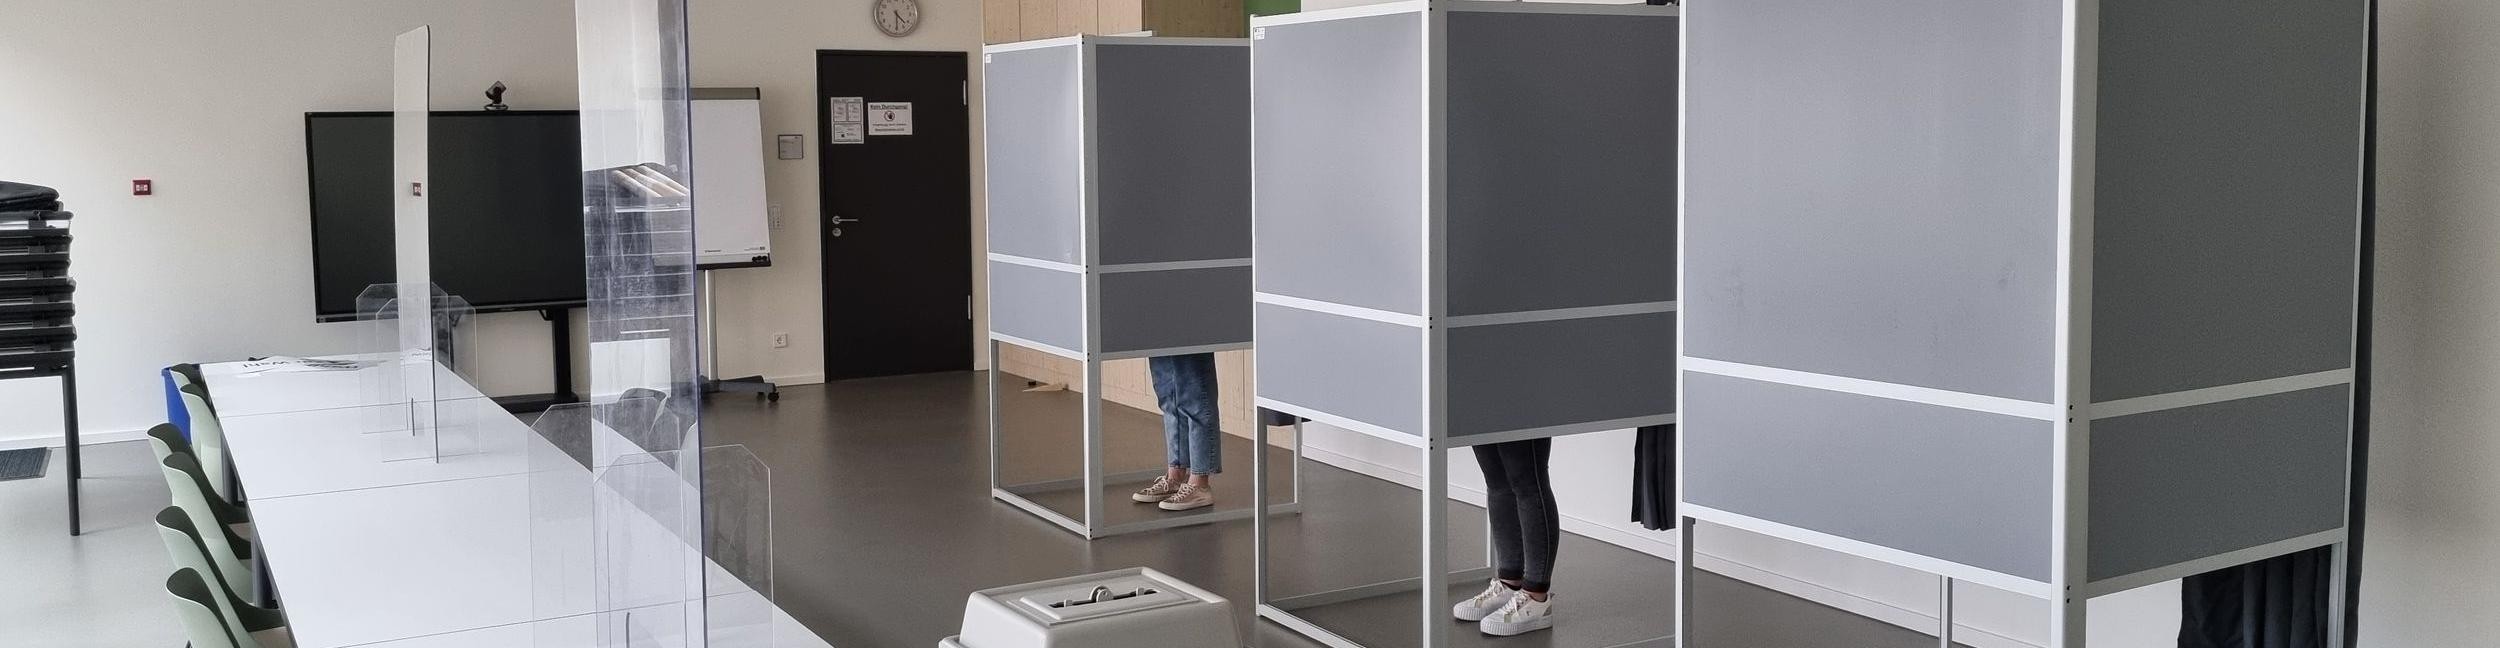 Des personnes se tiennent dans l'isoloir d'un bureau de vote